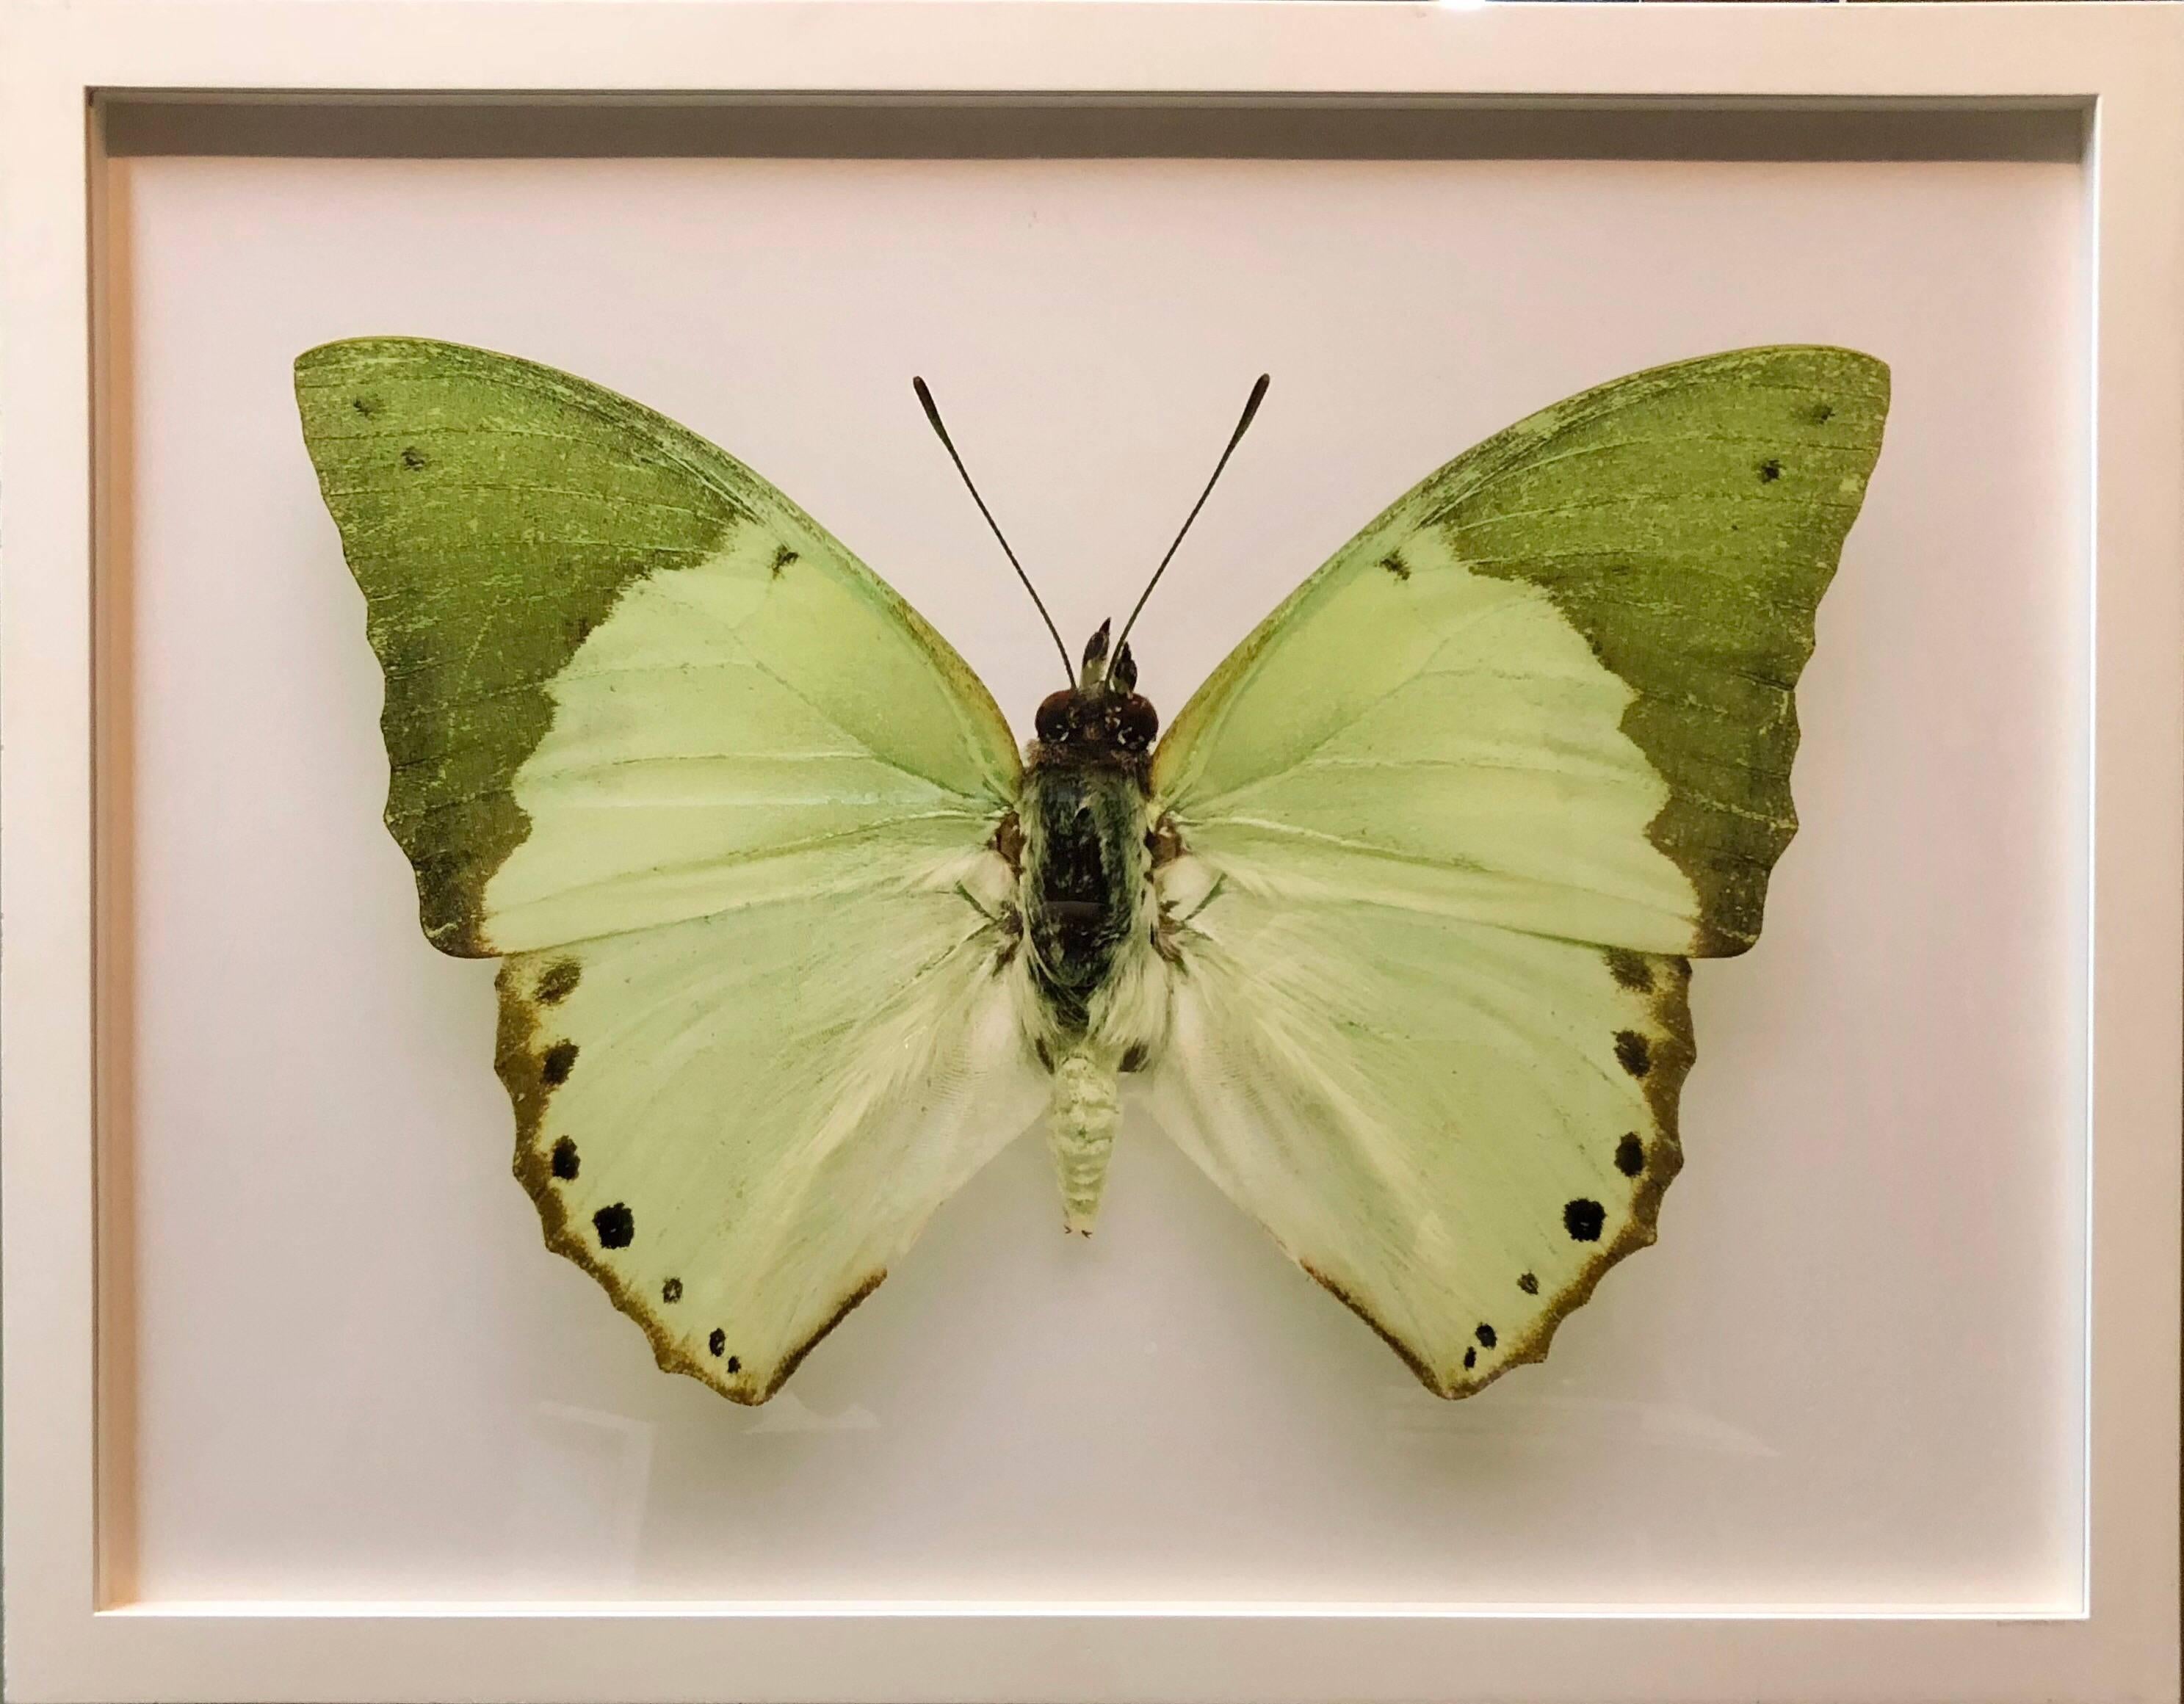 Landscape Photograph Elisabeth Montagnier - Butterfly, photographie moderne encadrée française